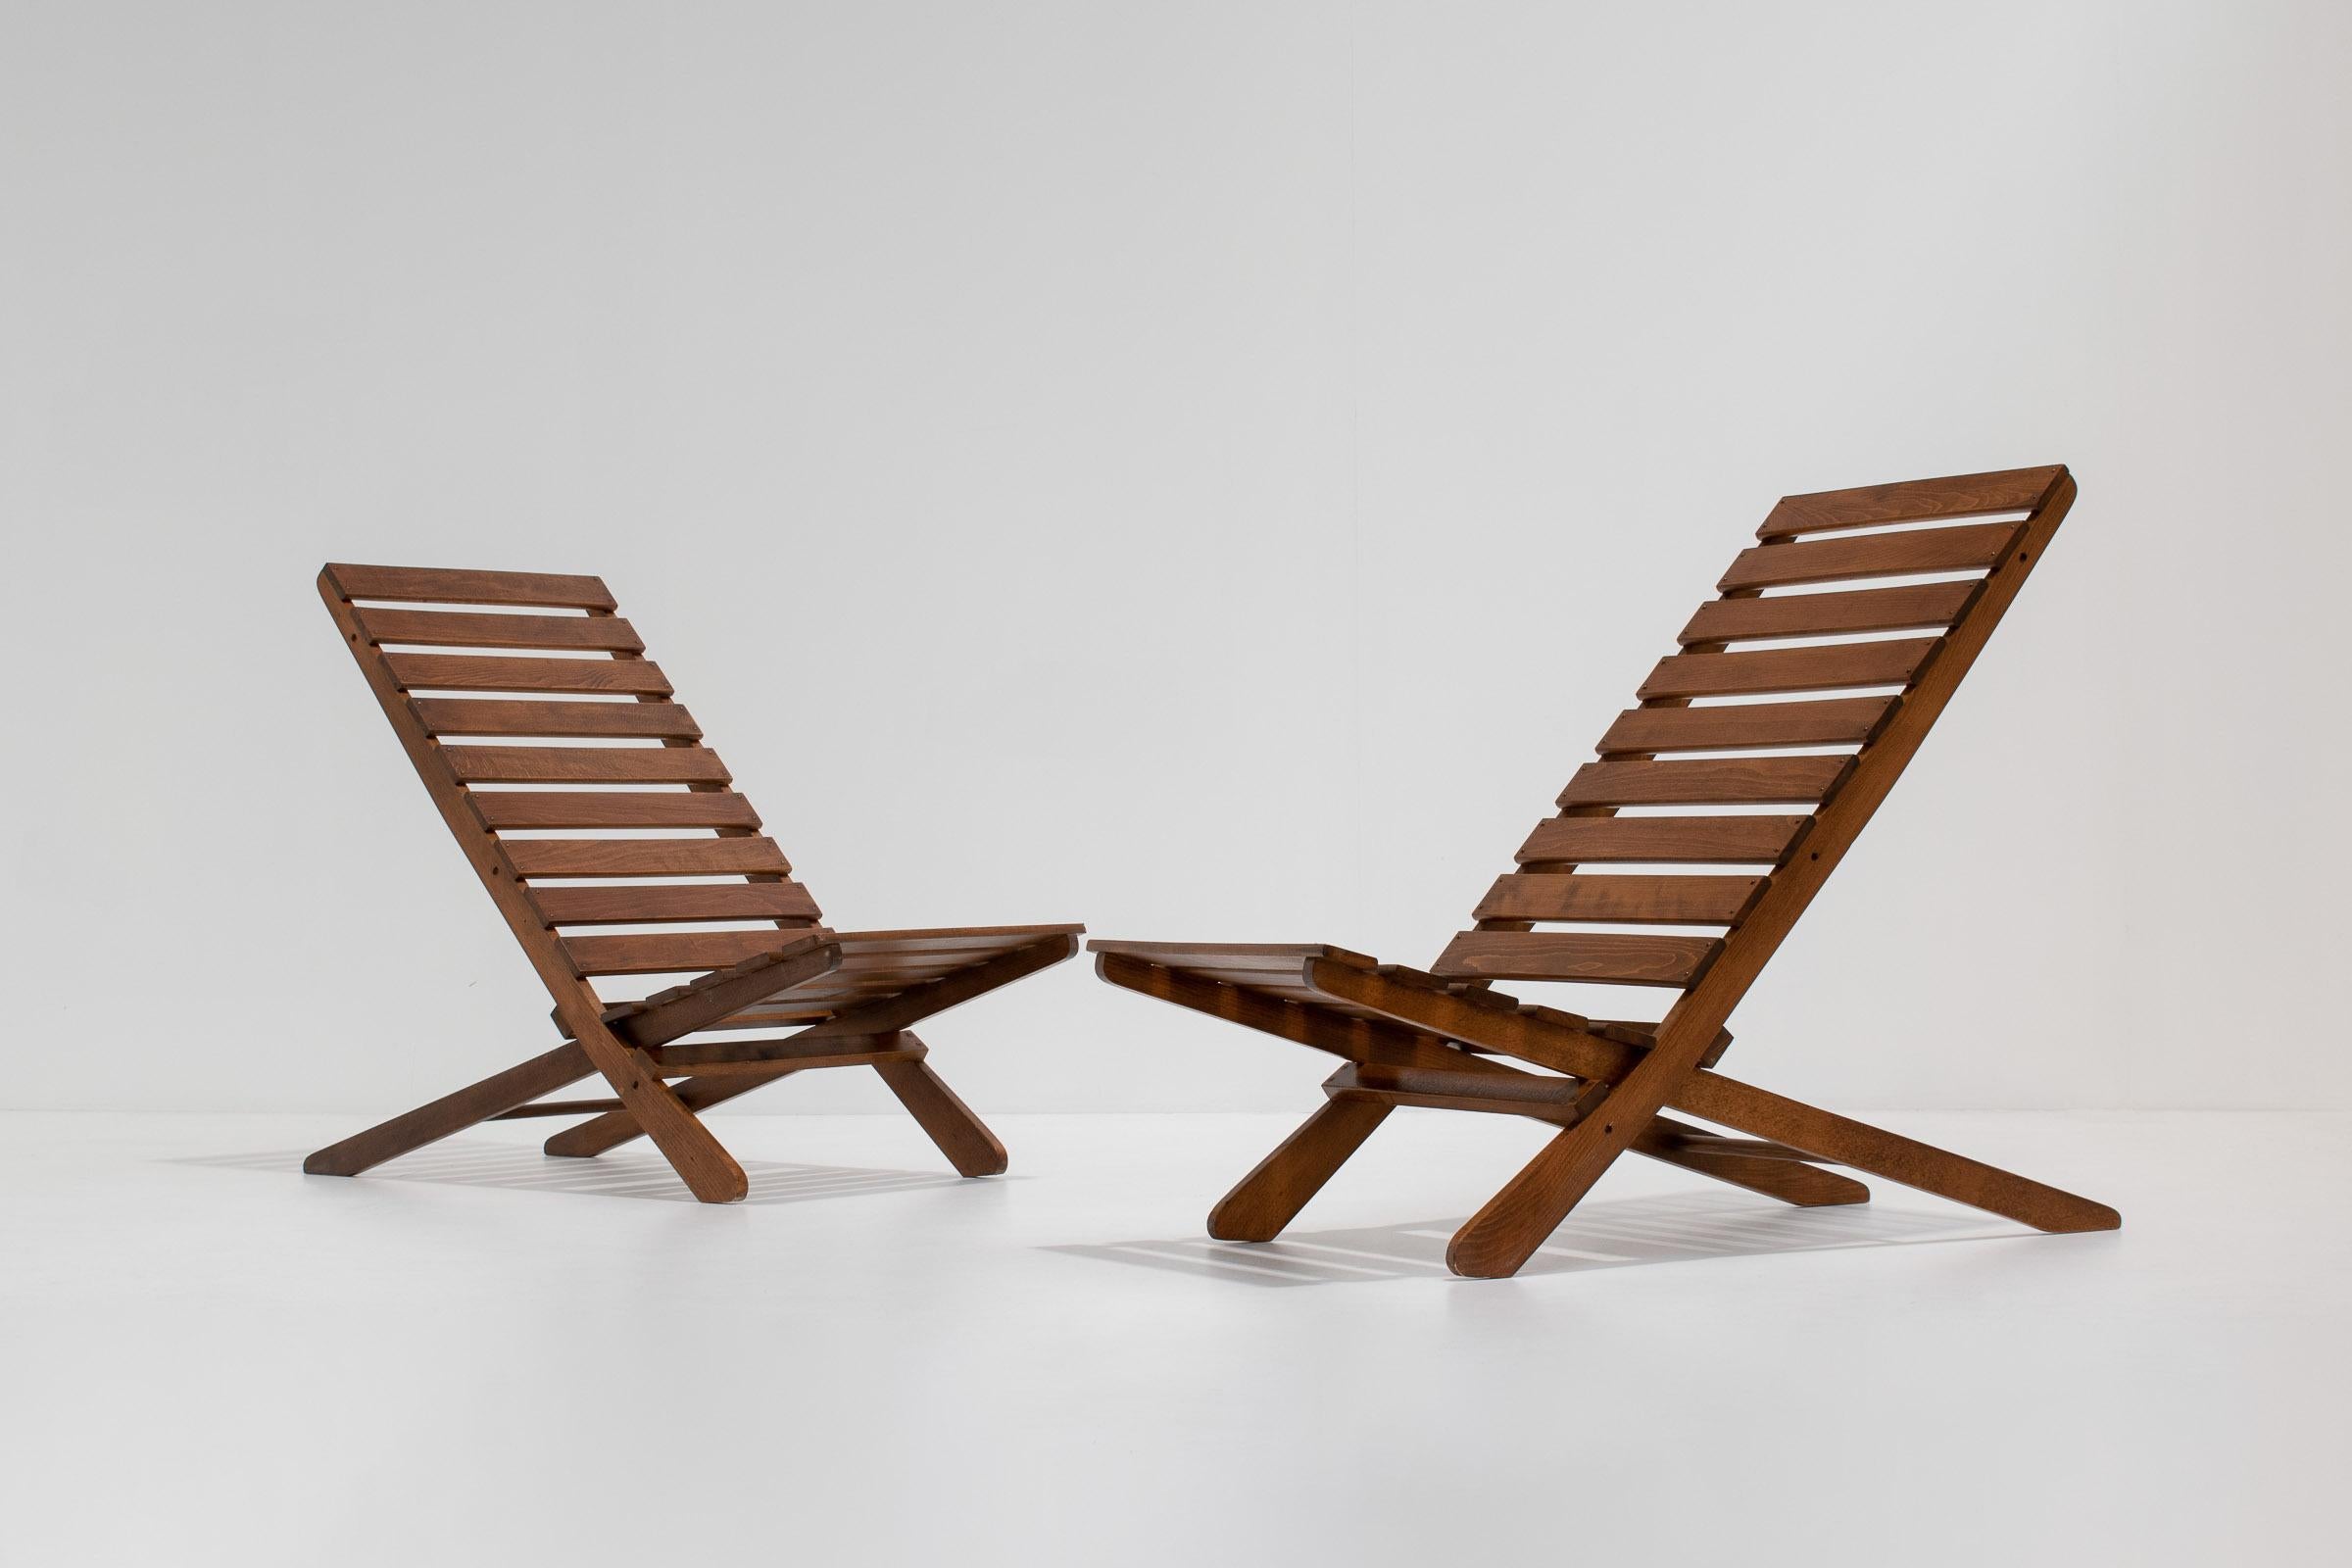 Ein wunderschönes und dekoratives Paar Scheren-Klappstühle. Dank ihres minimalistischen Designs wirken sie sehr architektonisch; die Konstruktion ist ebenso einfach wie auffällig. Die Stühle können als dekorative Beistellstühle in jedem Wohn- oder